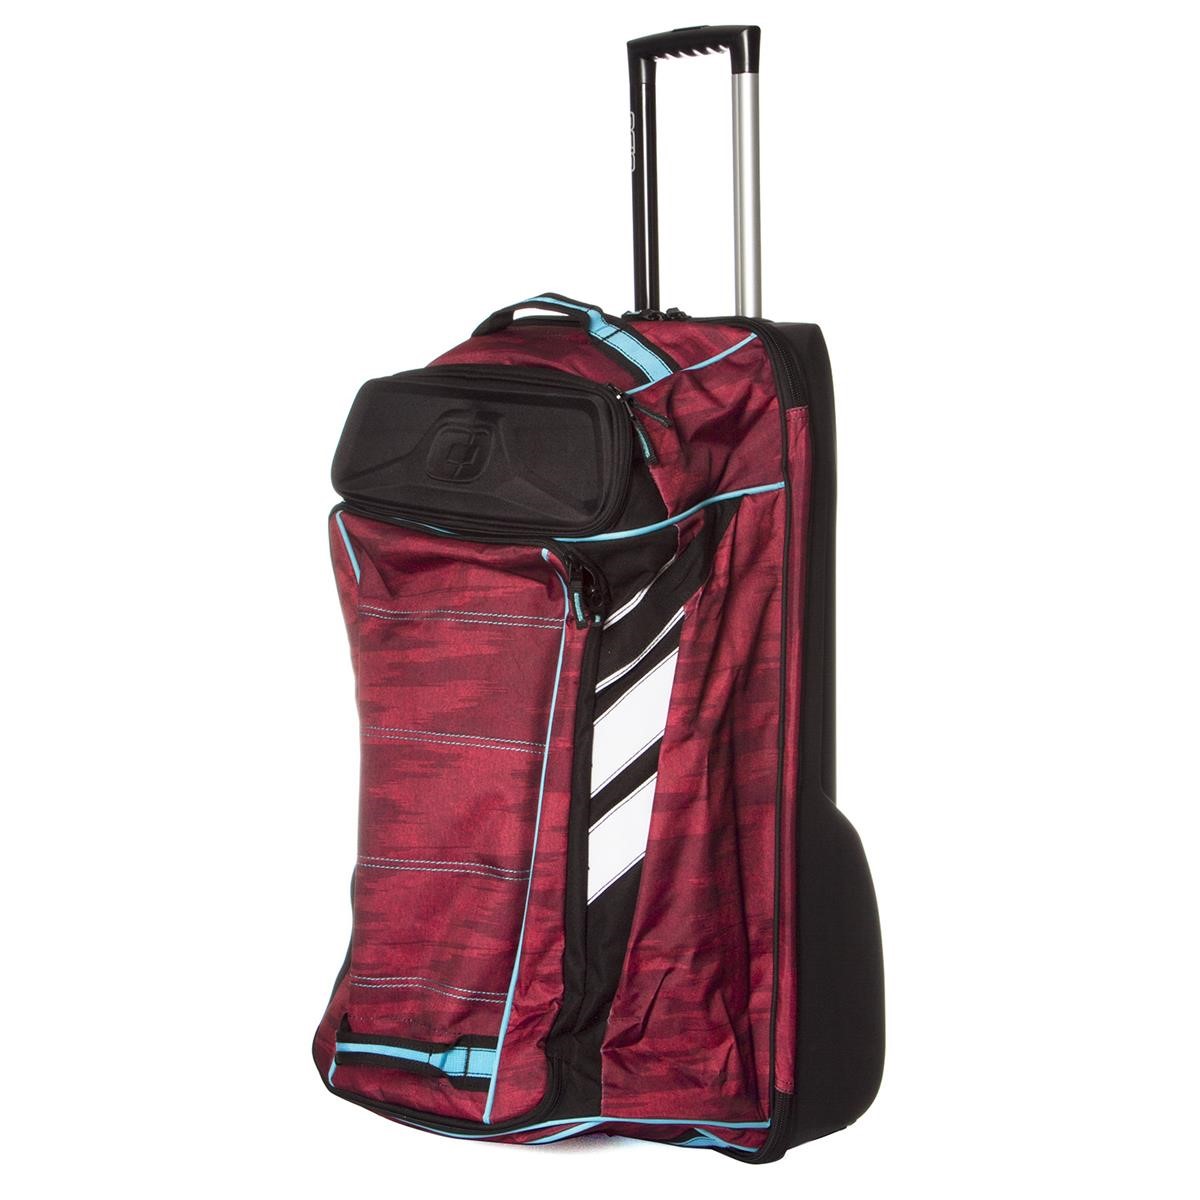 Ogio Travel Bag Adrenaline Wheel Bag Red Haze - Limited Edition